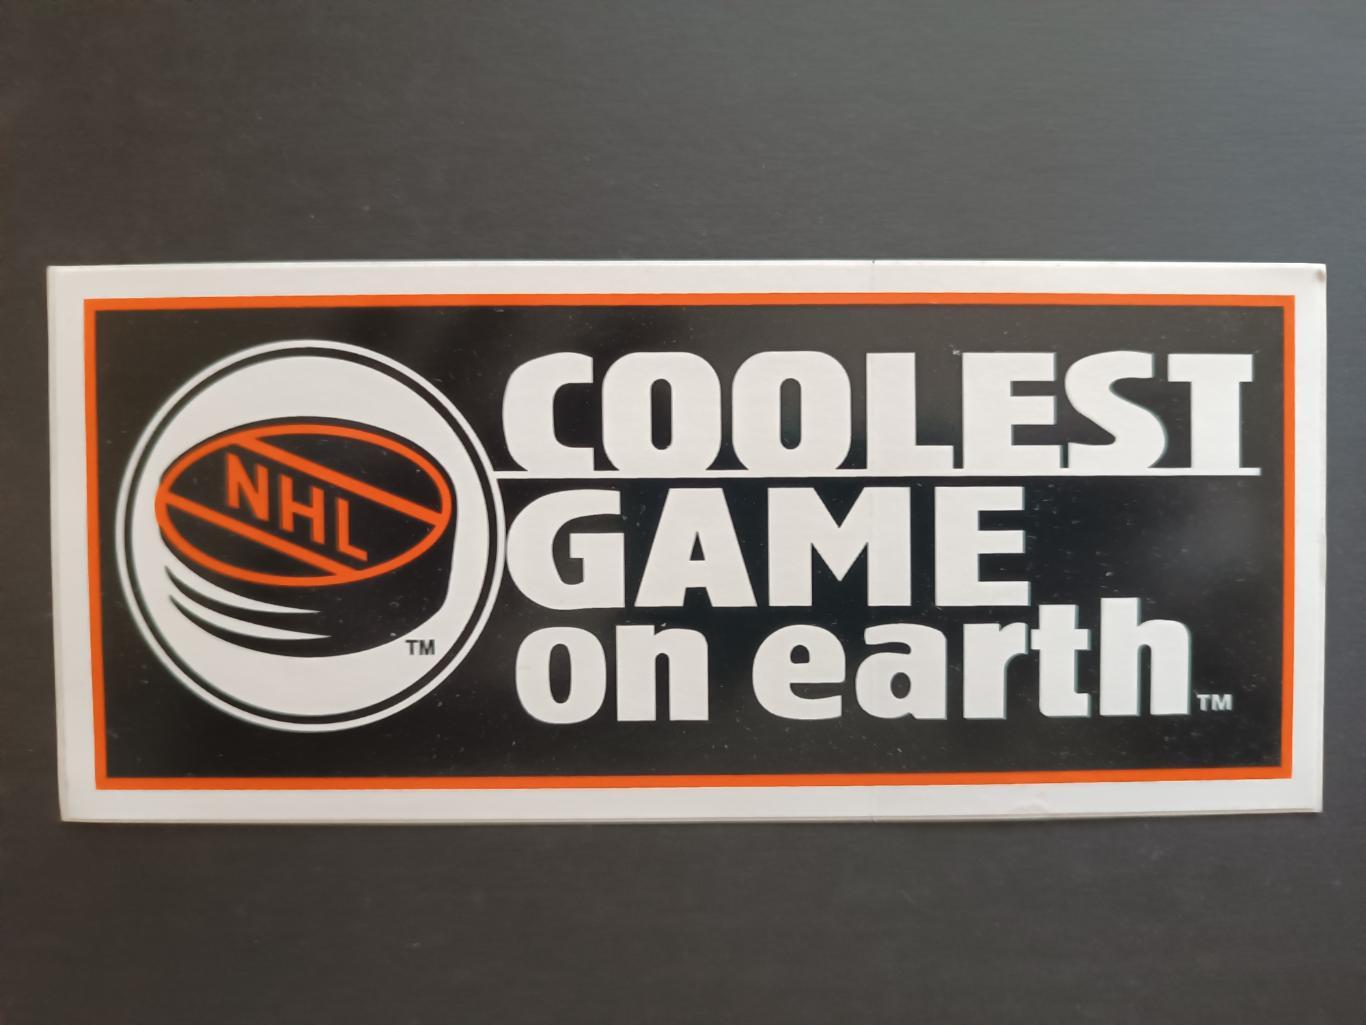 НАКЛЕЙКА НХЛ ОФИЦИАЛЬНАЯ 1946/47 - 2004/05 NHL COOLEST GAME ON EARTH STIСKER 2